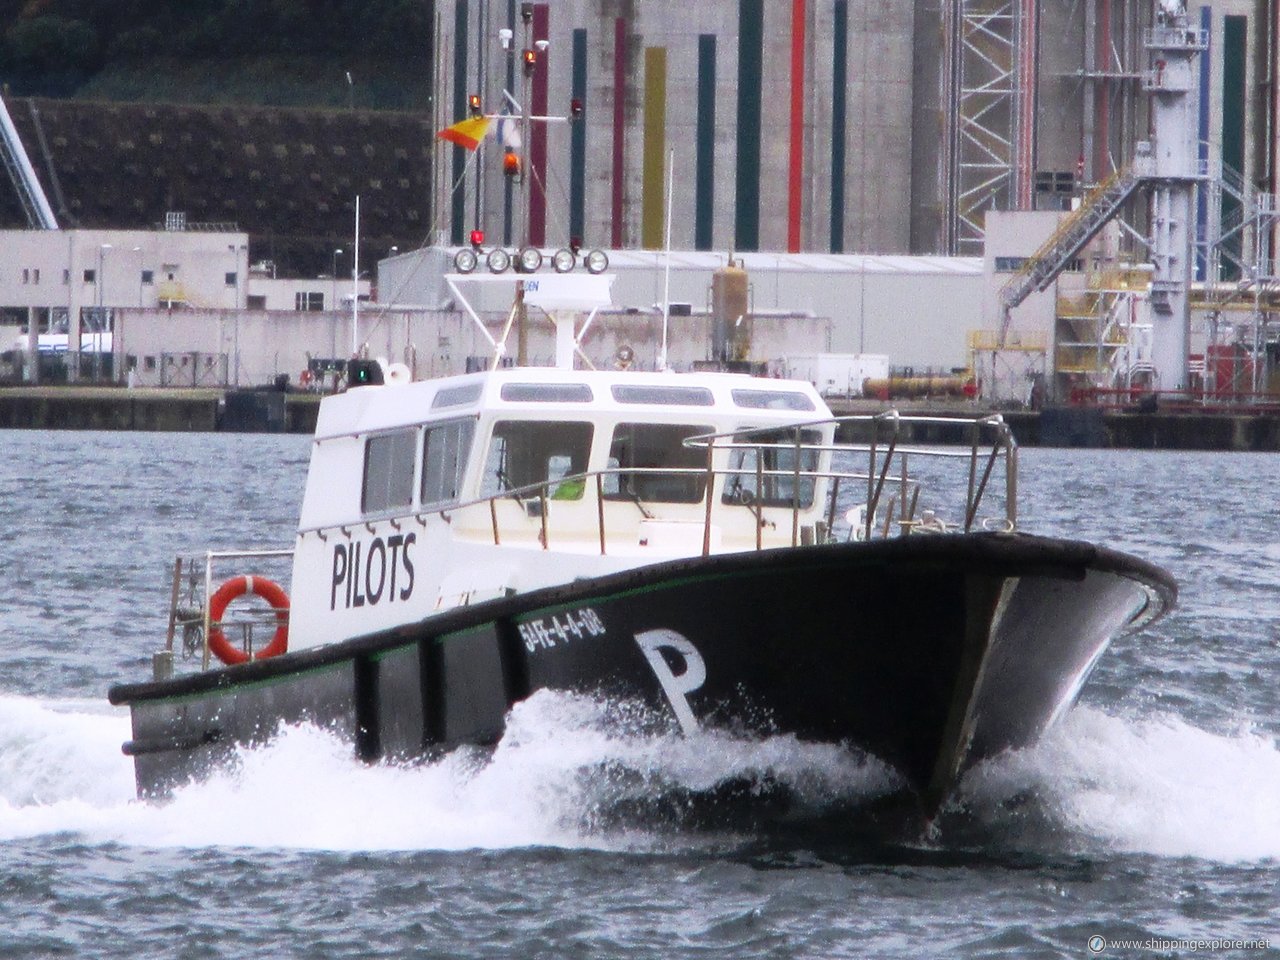 Ferrol Pilots-1